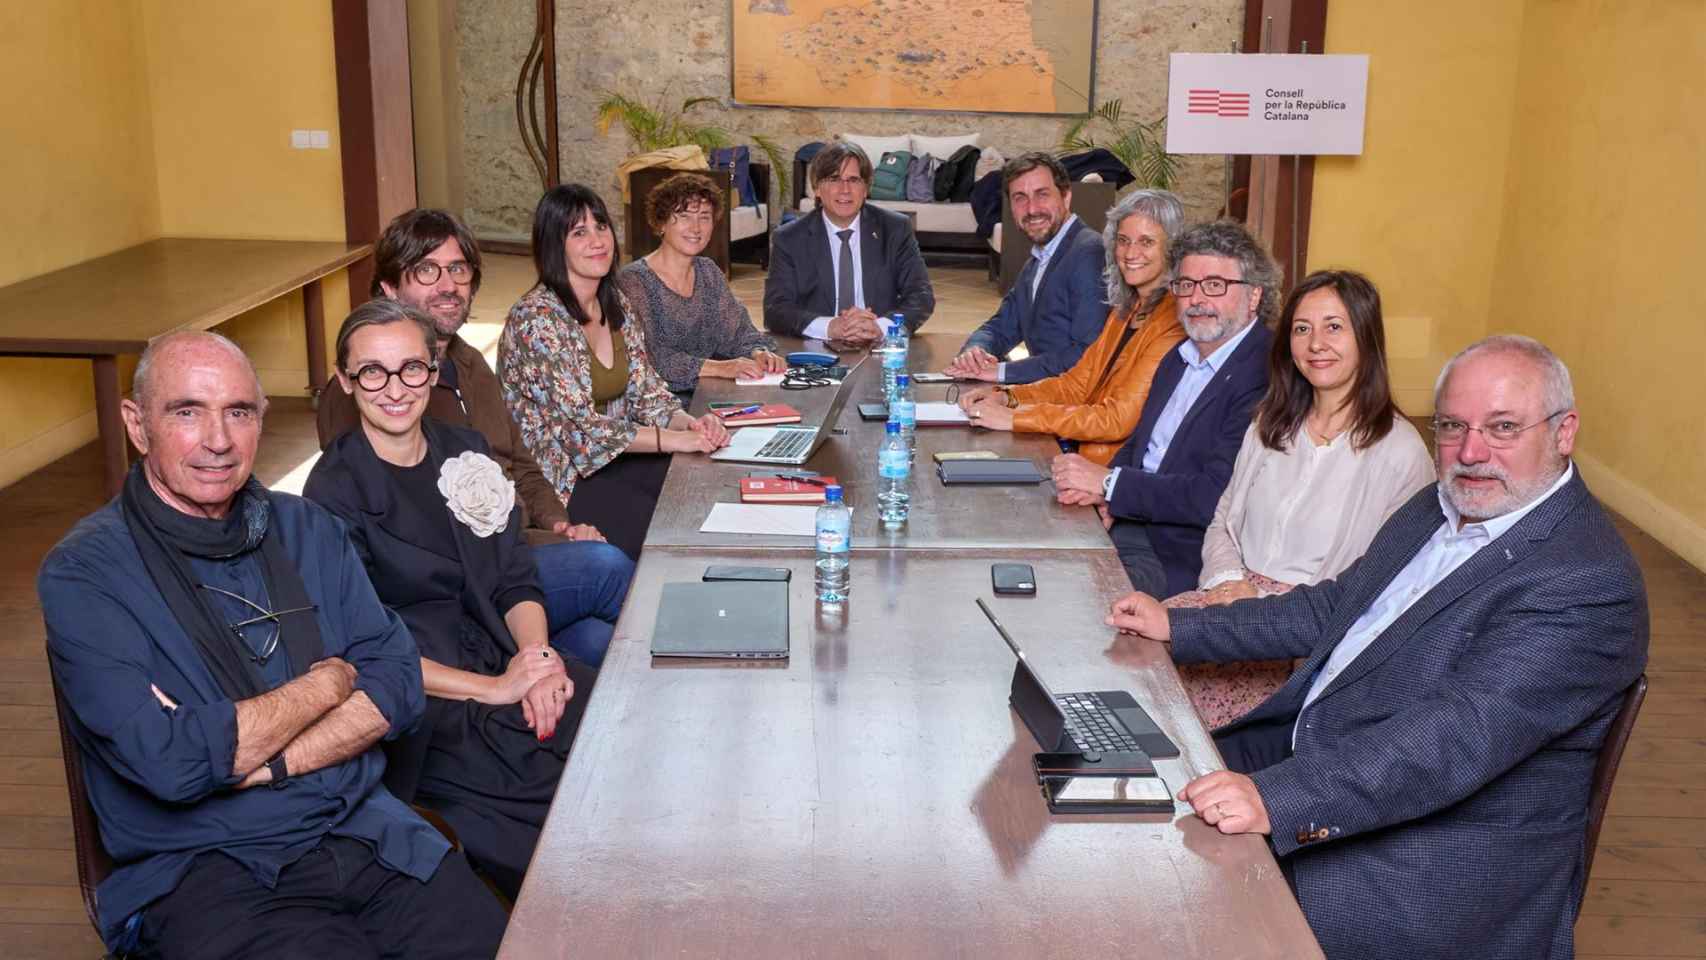 La primera reunión presencial del nuevo gobierno del CxRep, encabezado por el expresidente de la Generalitat Carles Puigdemont / JOSEP BALCELLS ADZET